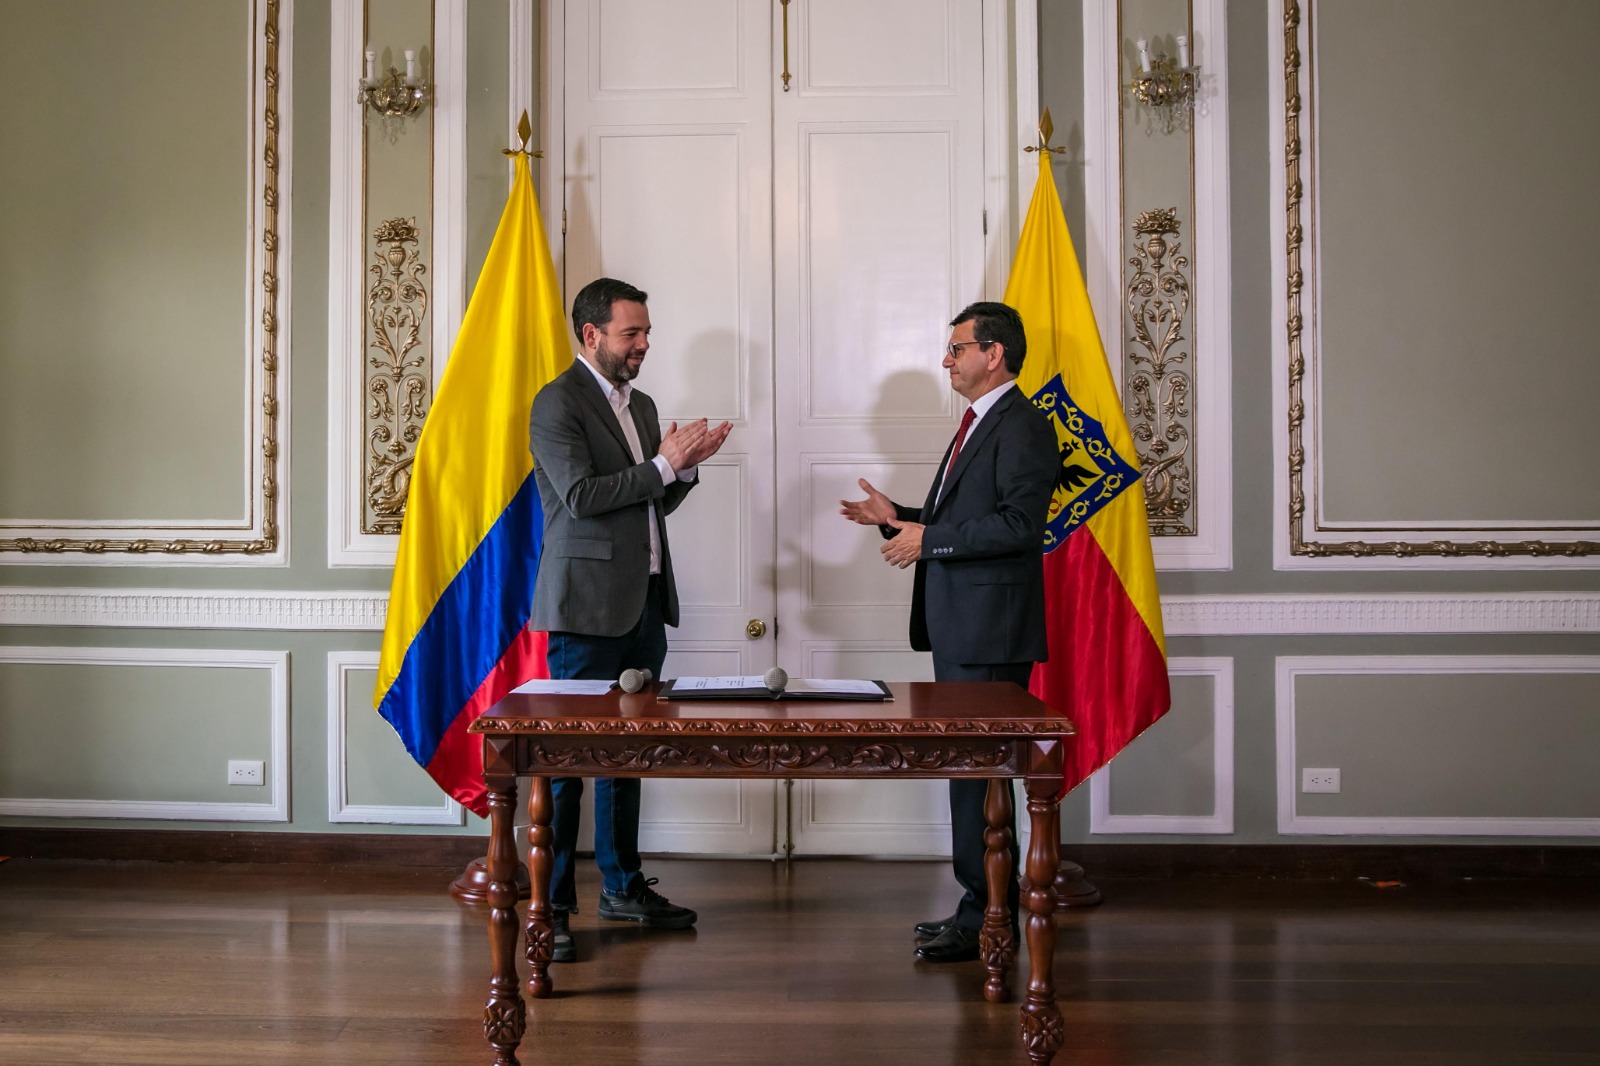 Alcalde de Bogotá Carlos Fernando Galán y el director del IDEP Mauricio Castillo Varela aplaudiendo finalizada la posesión